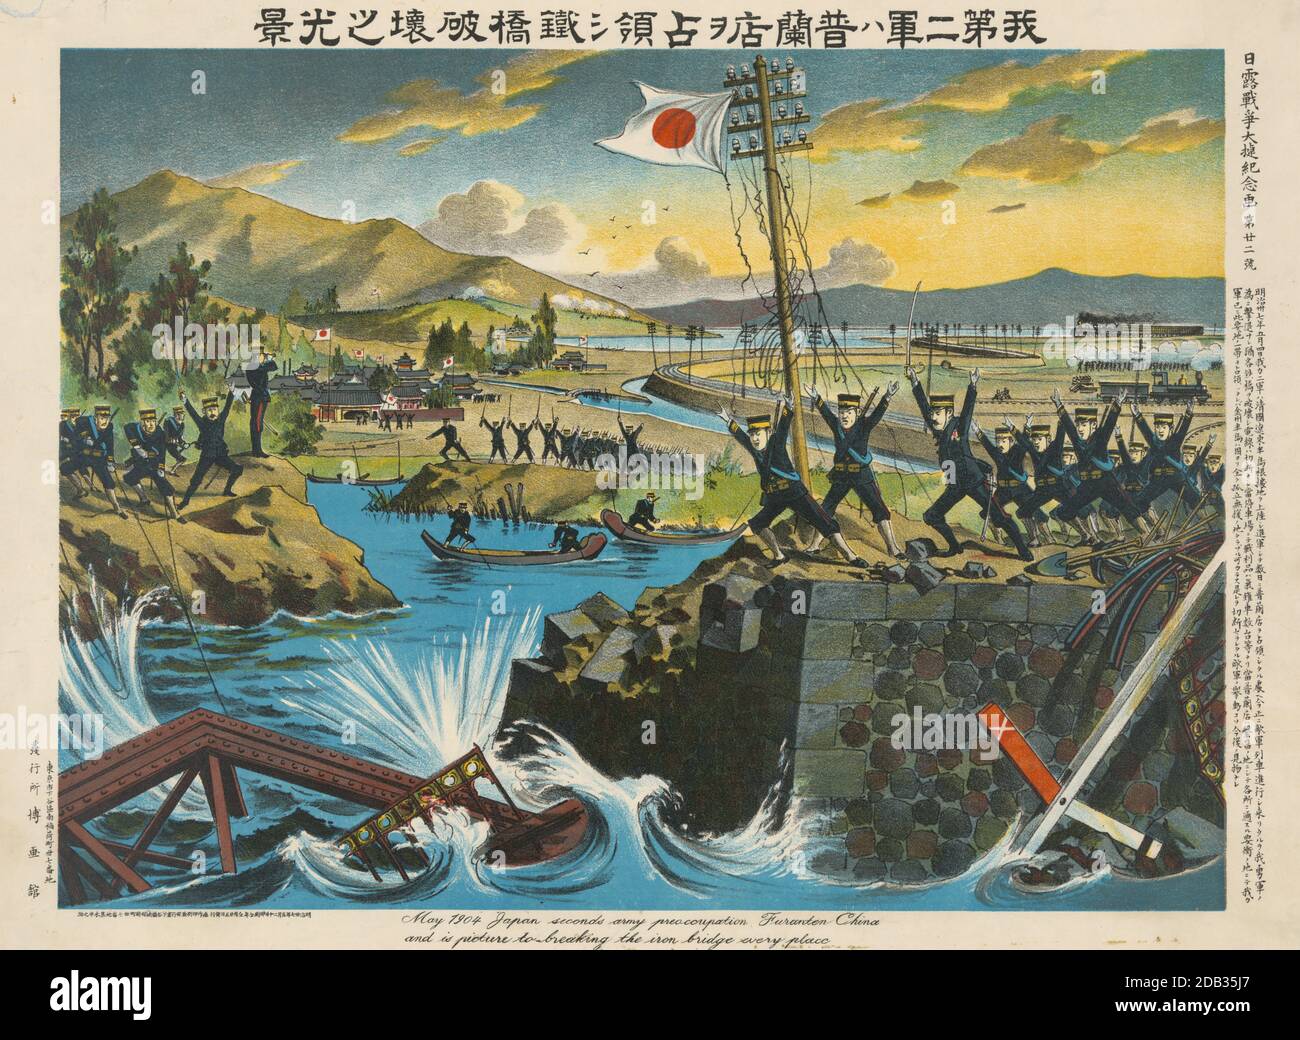 Japanische zweite Armee zerstört eine Brücke bei Pu-lan-tien während des russisch-japanischen Krieges. Stockfoto